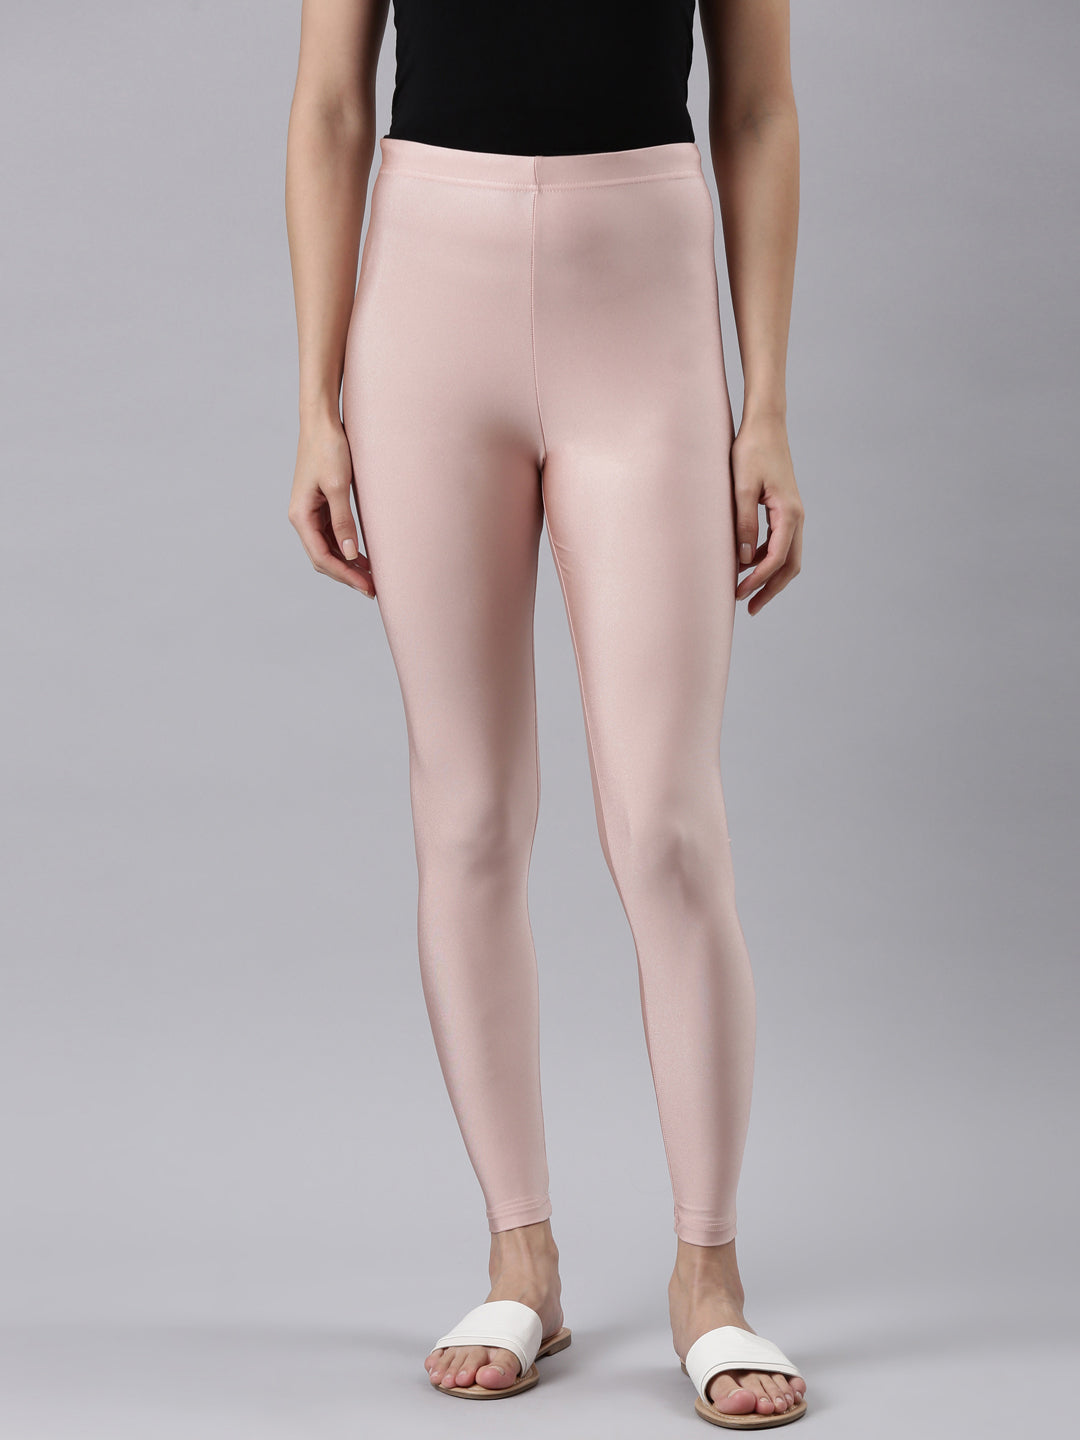 Skims Shimmer Legging Copper Women's Size M High Rise NWT | eBay